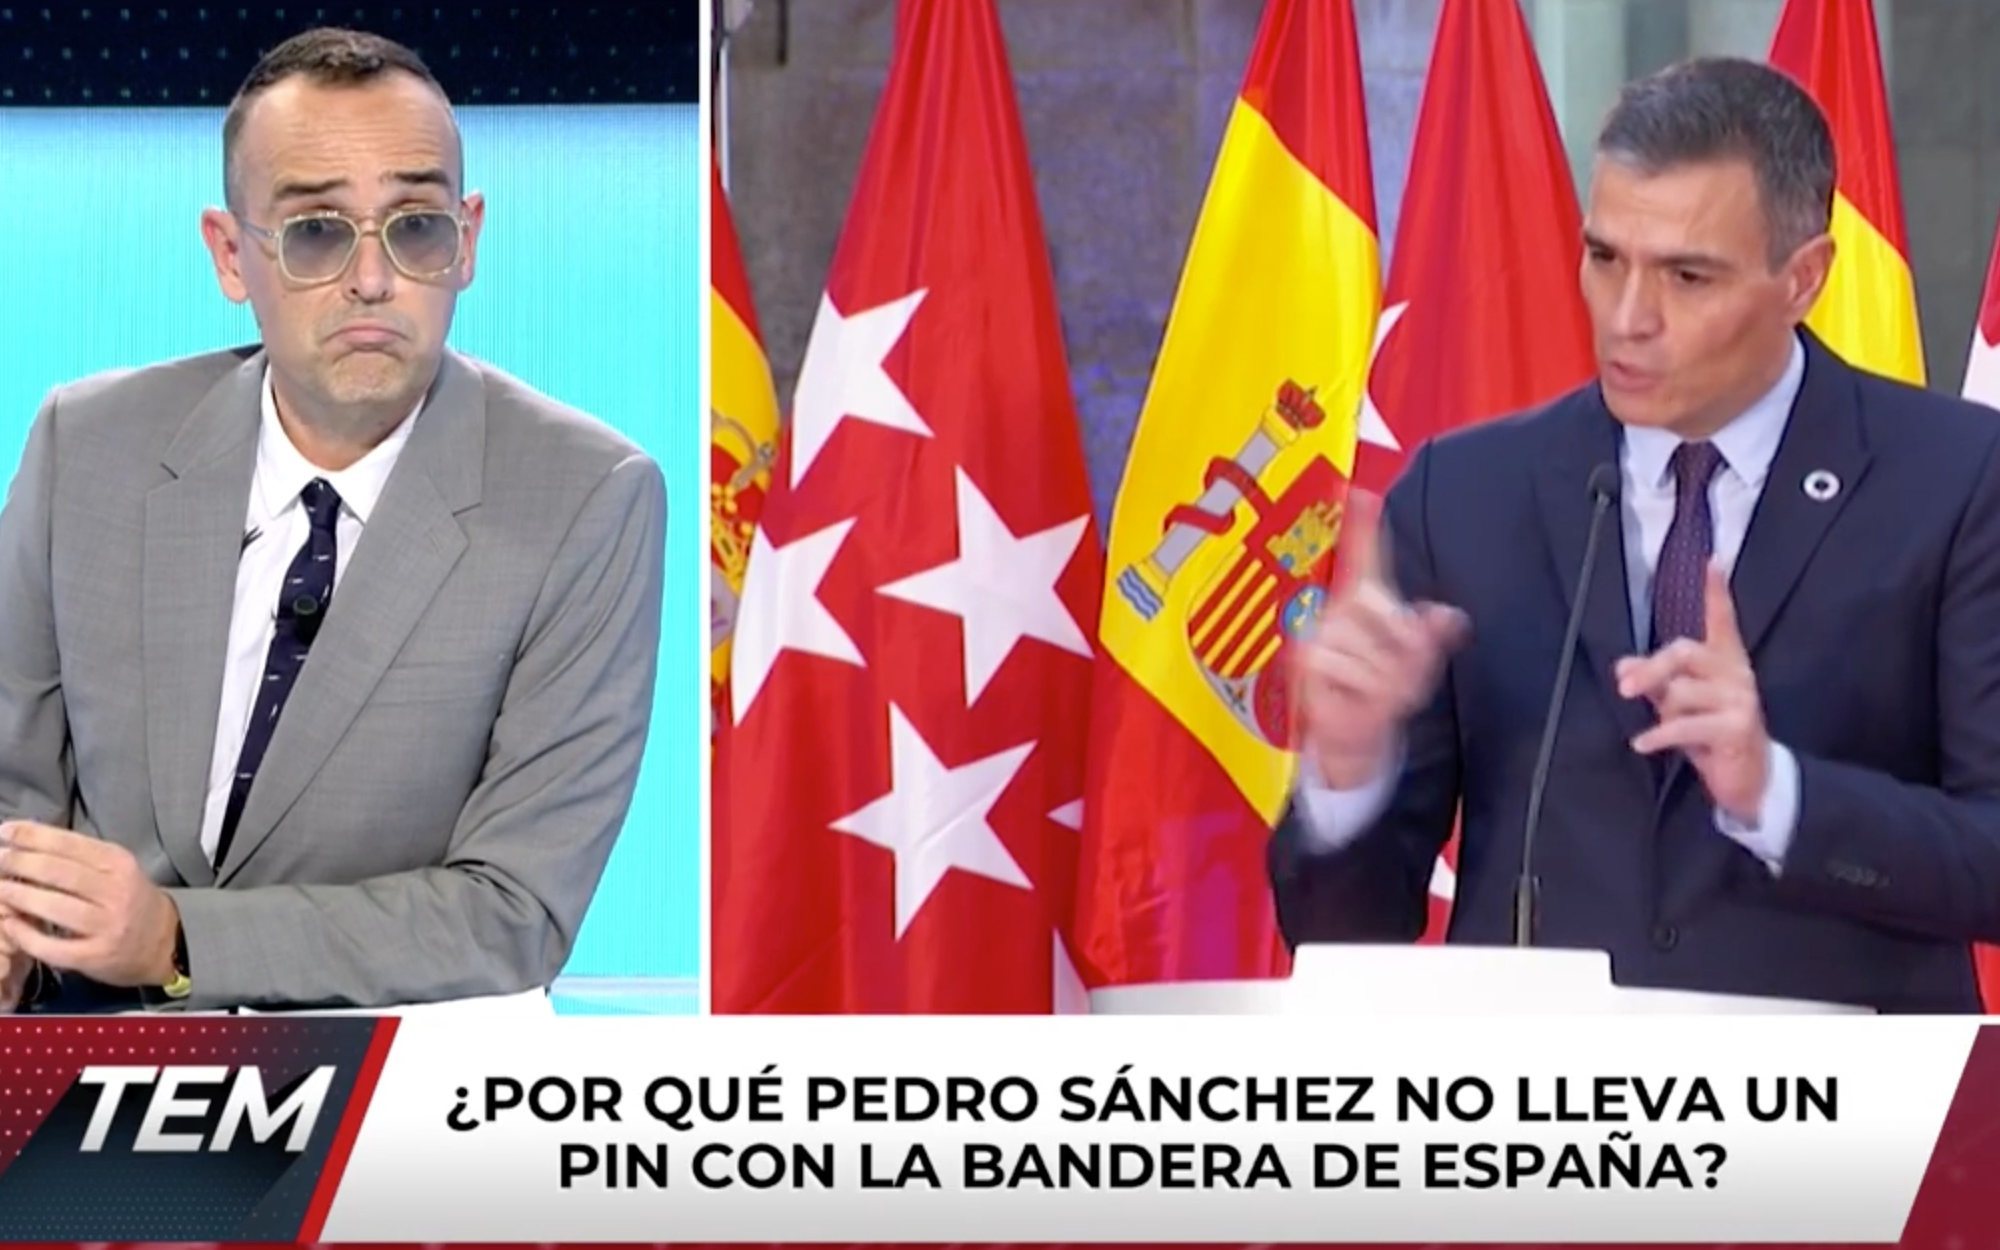 Risto Mejide y su petición a Pedro Sánchez: "Que nuestro presidente lleve la bandera de España con orgullo"